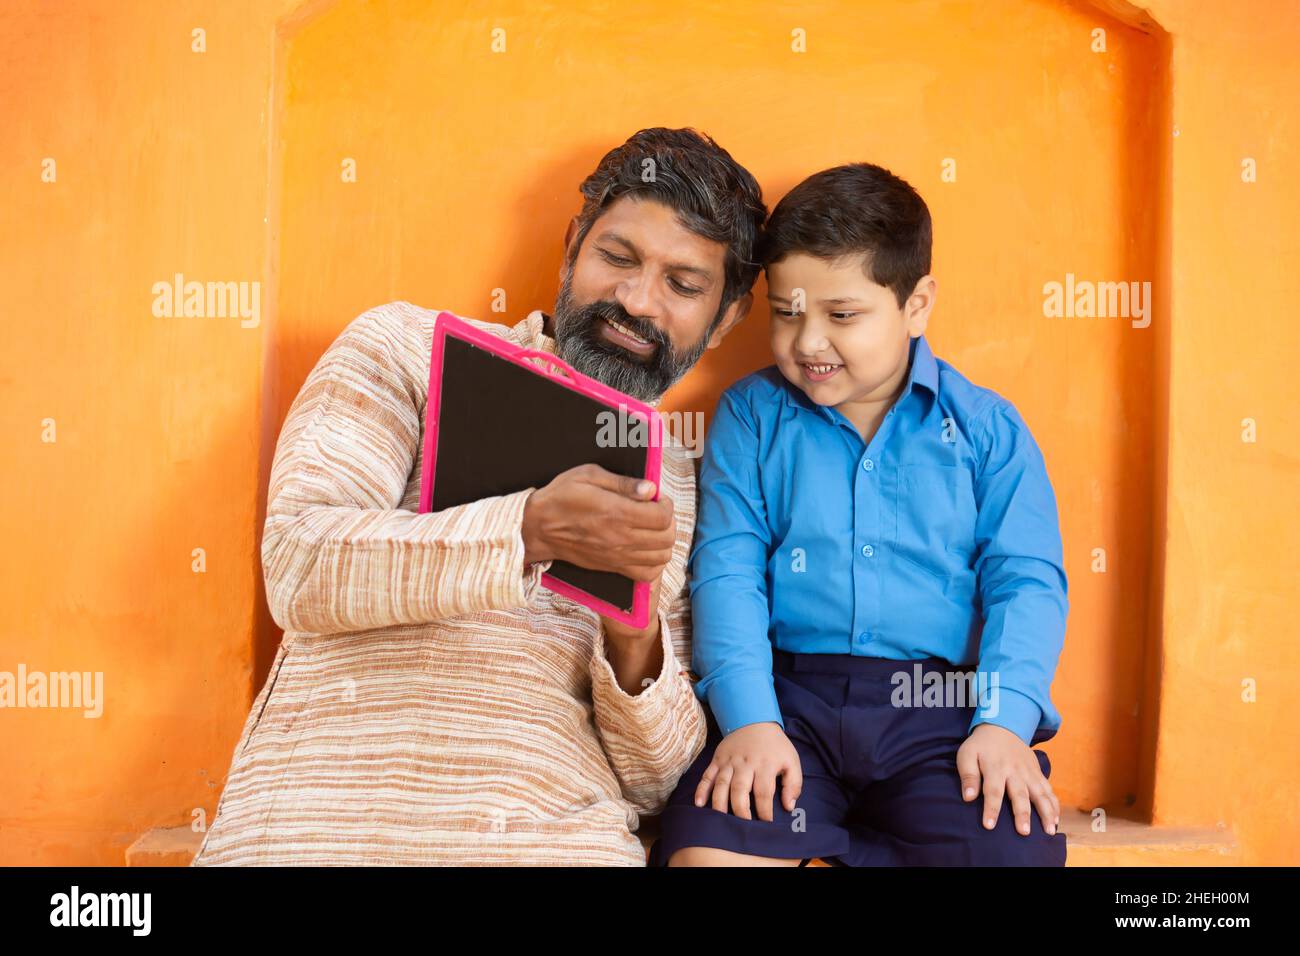 Fröhlicher indischer Vater und sein süßer kleiner Sohn in Schuluniform schreiben auf Schiefertafel vor orangefarbenem Hintergrund, entzückendes Grundkind mit Bartmann Stockfoto